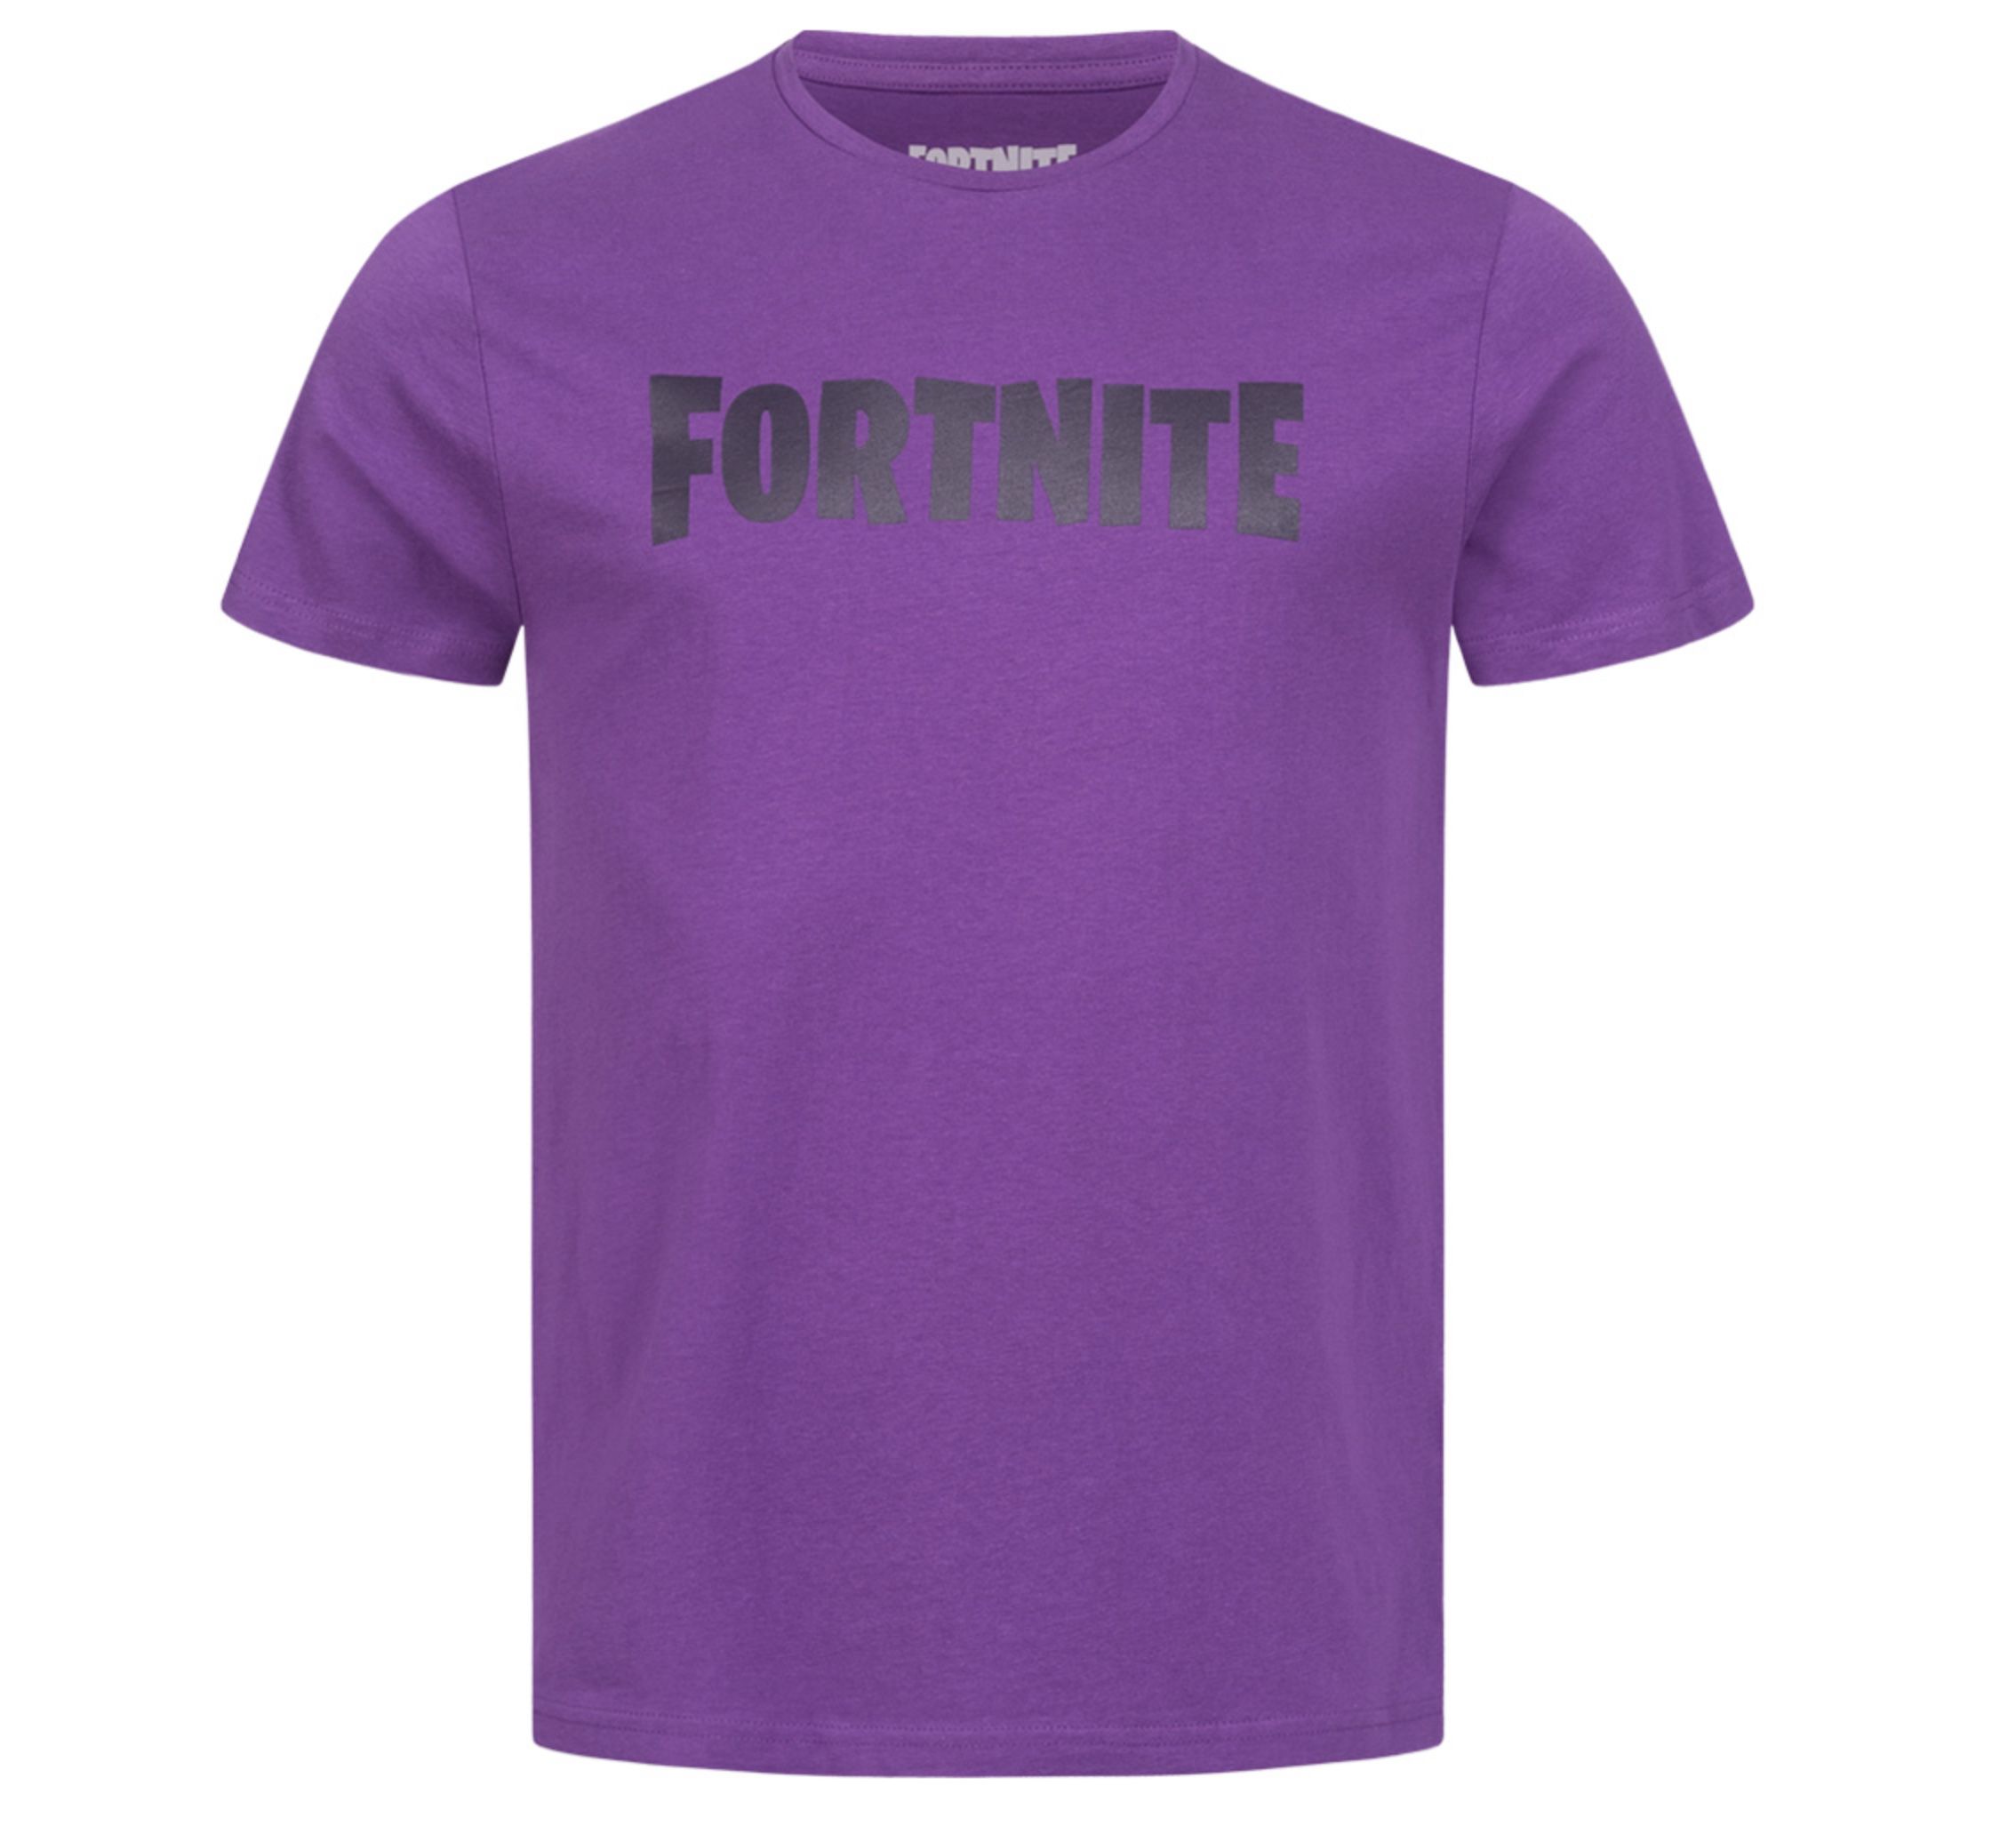 FORTNITE Classic Logo Herren T Shirt für 4,99€ (statt 9€)  8 Modelle